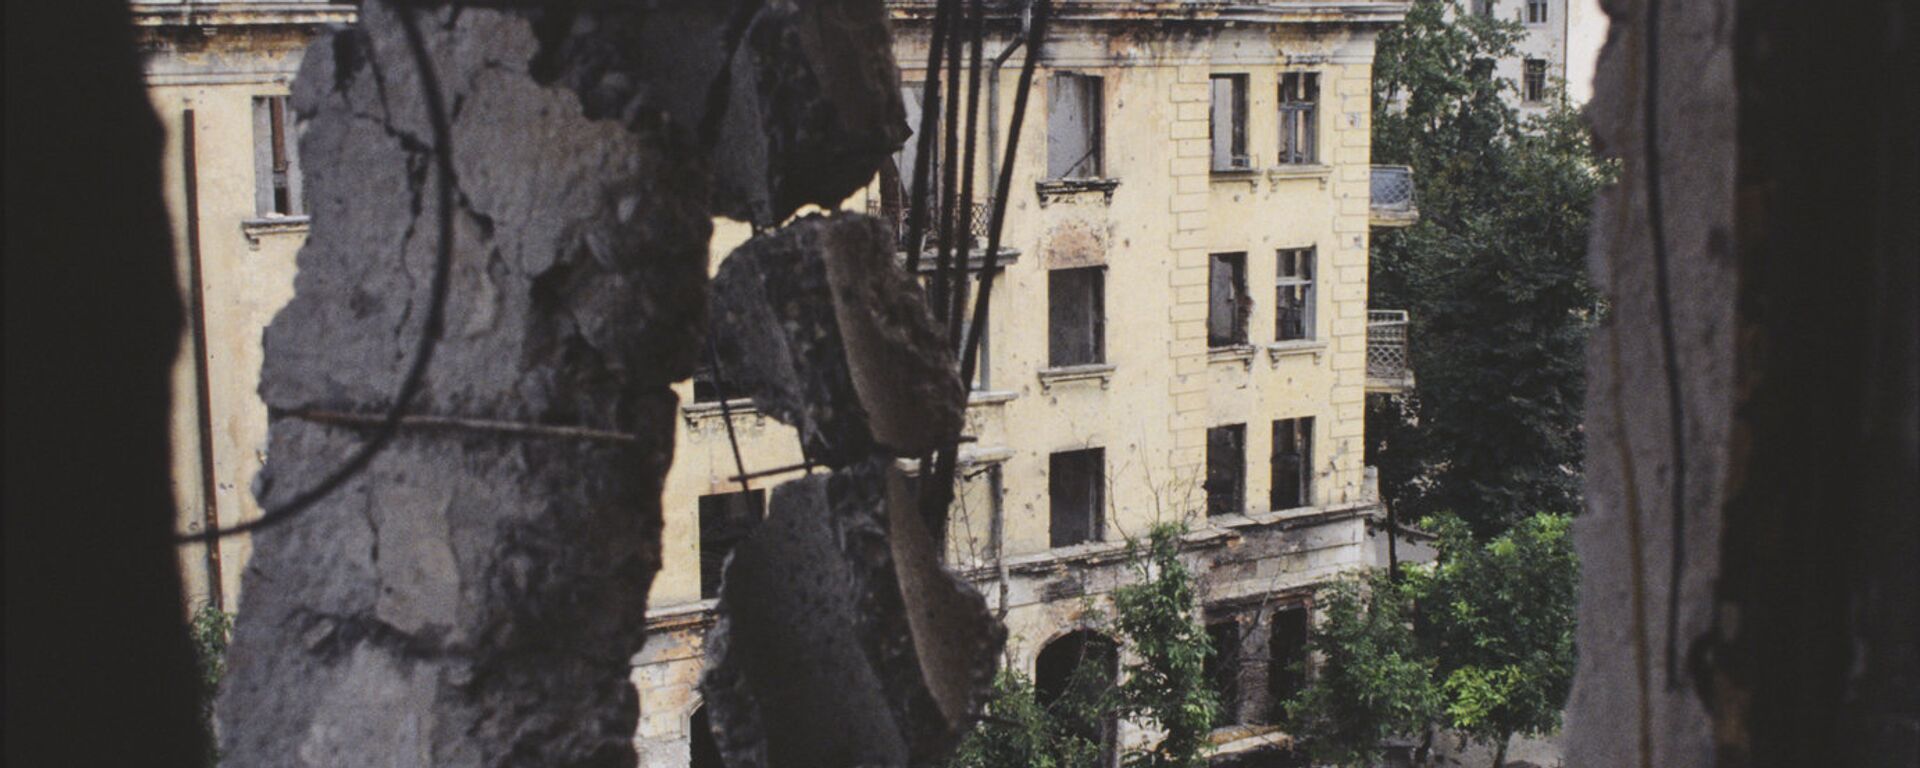 Отечественная война народа Абхазии 1993-1994 года. Разрушенные дома в центре города Сухум - Sputnik Аҧсны, 1920, 14.08.2021